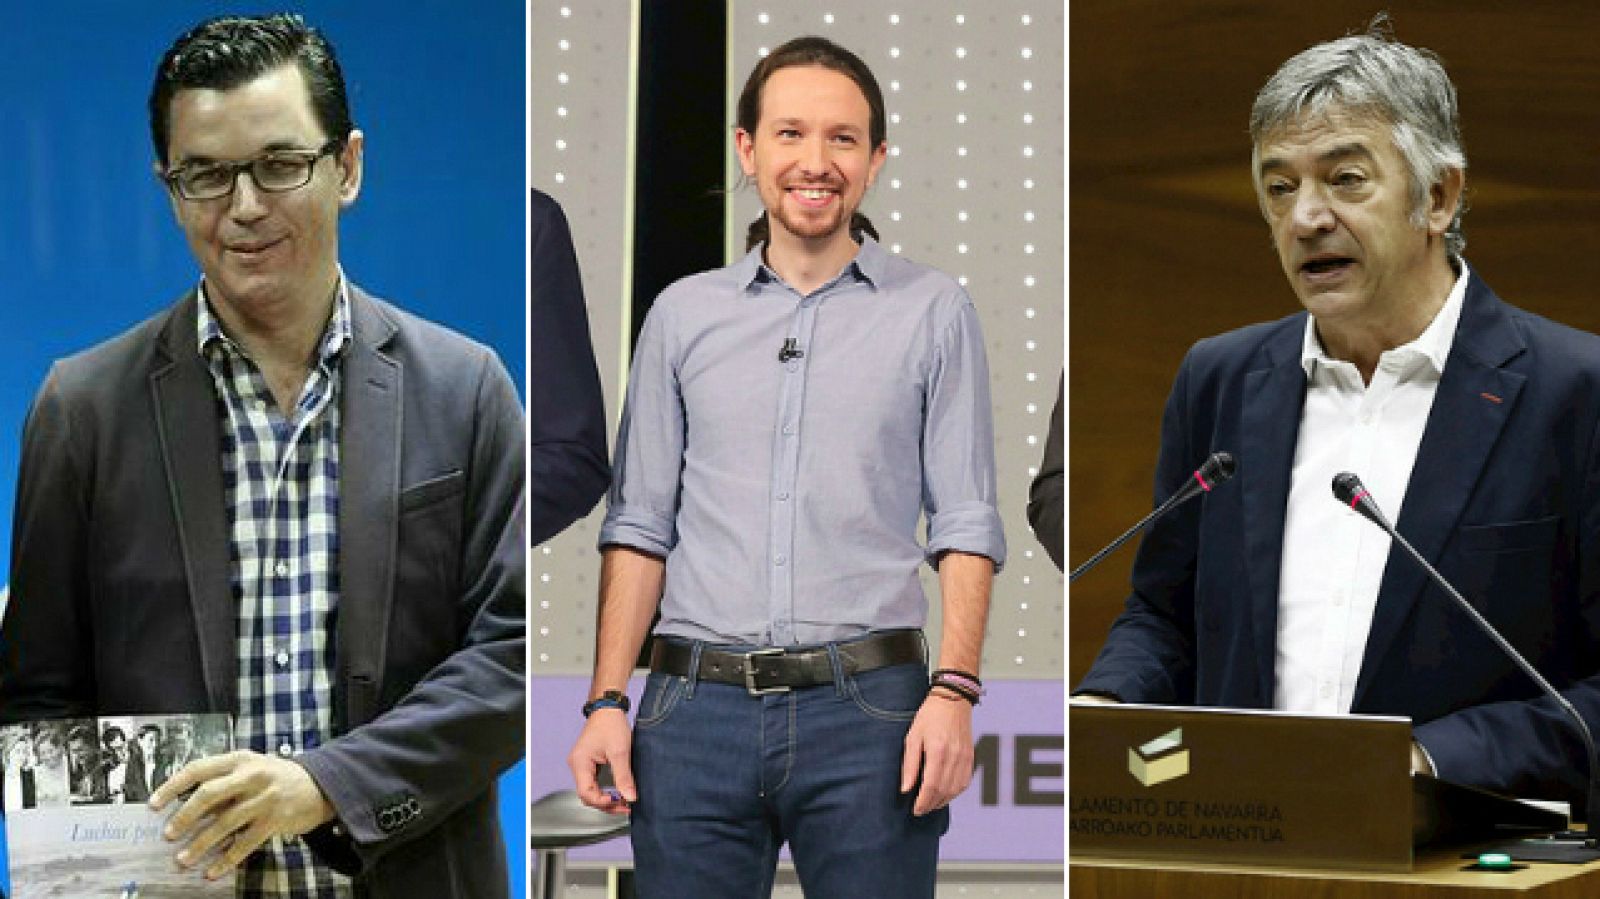  Las mañanas de RNE - Entrevistas electorales: Pablo Rodríguez (CC), Pablo Iglesias (Podemos), Koldo Martínez (Geroa Bai) - Escuchar ahora 